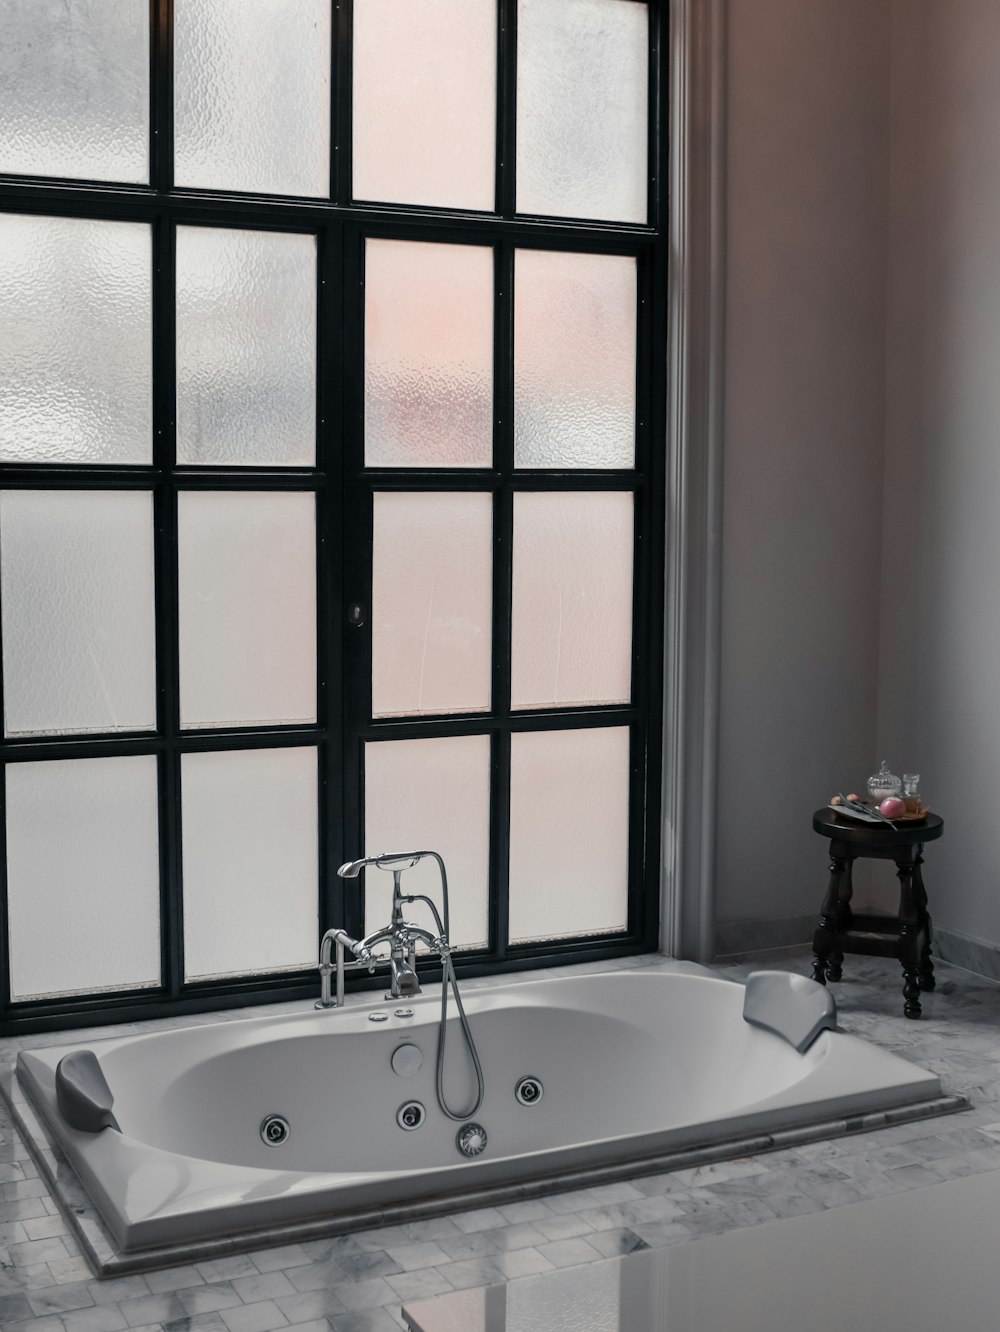 a bath tub sitting next to a window in a bathroom